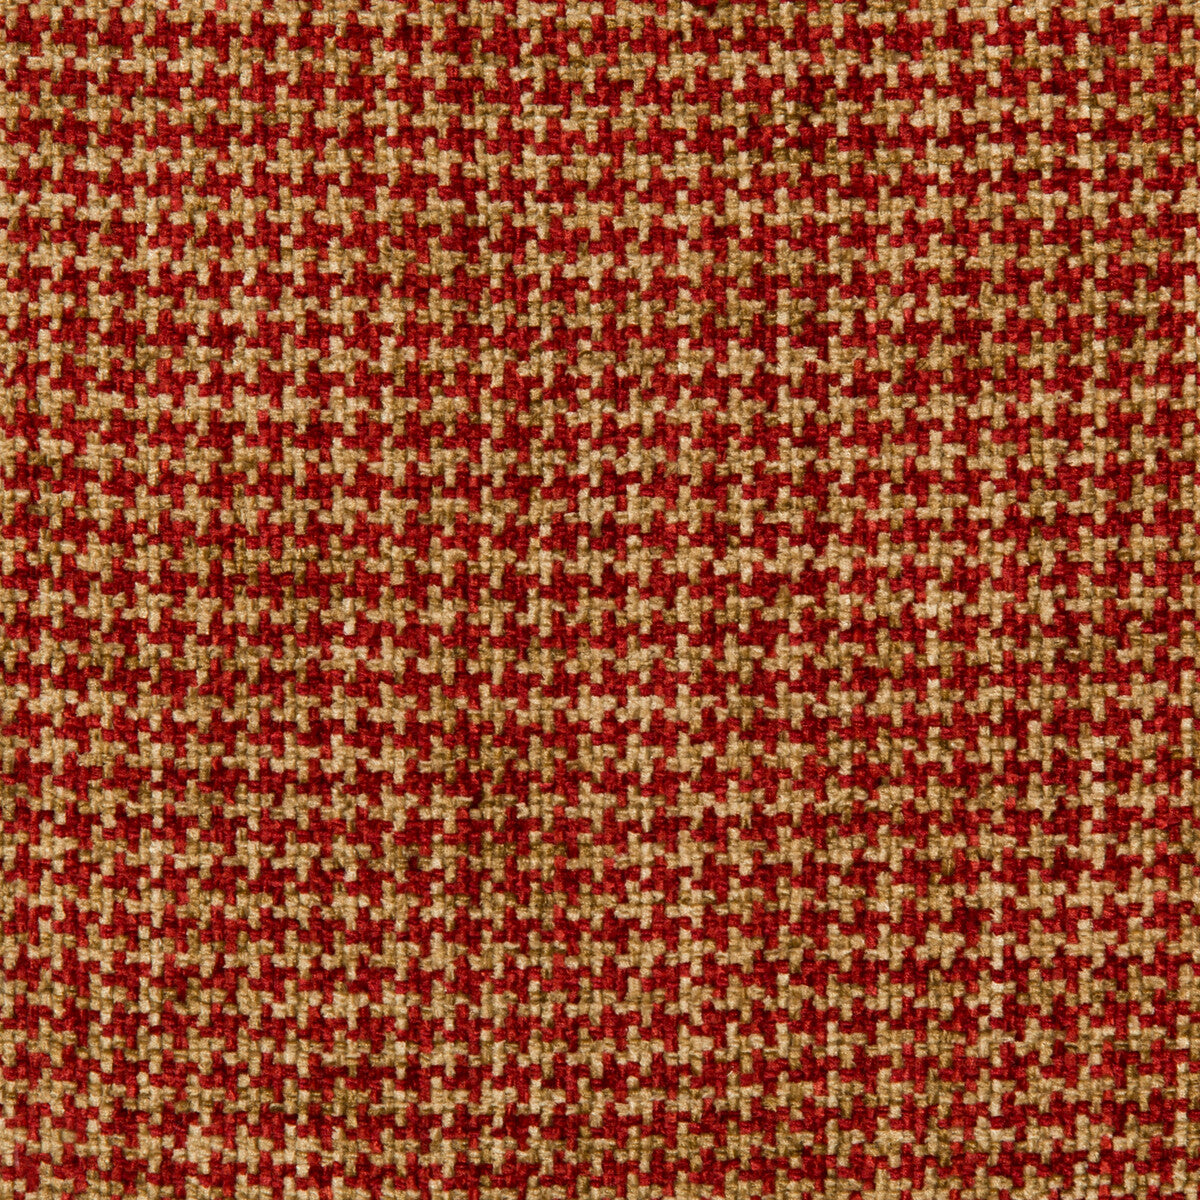 Kravet Basics fabric in 35778-916 color - pattern 35778.916.0 - by Kravet Basics